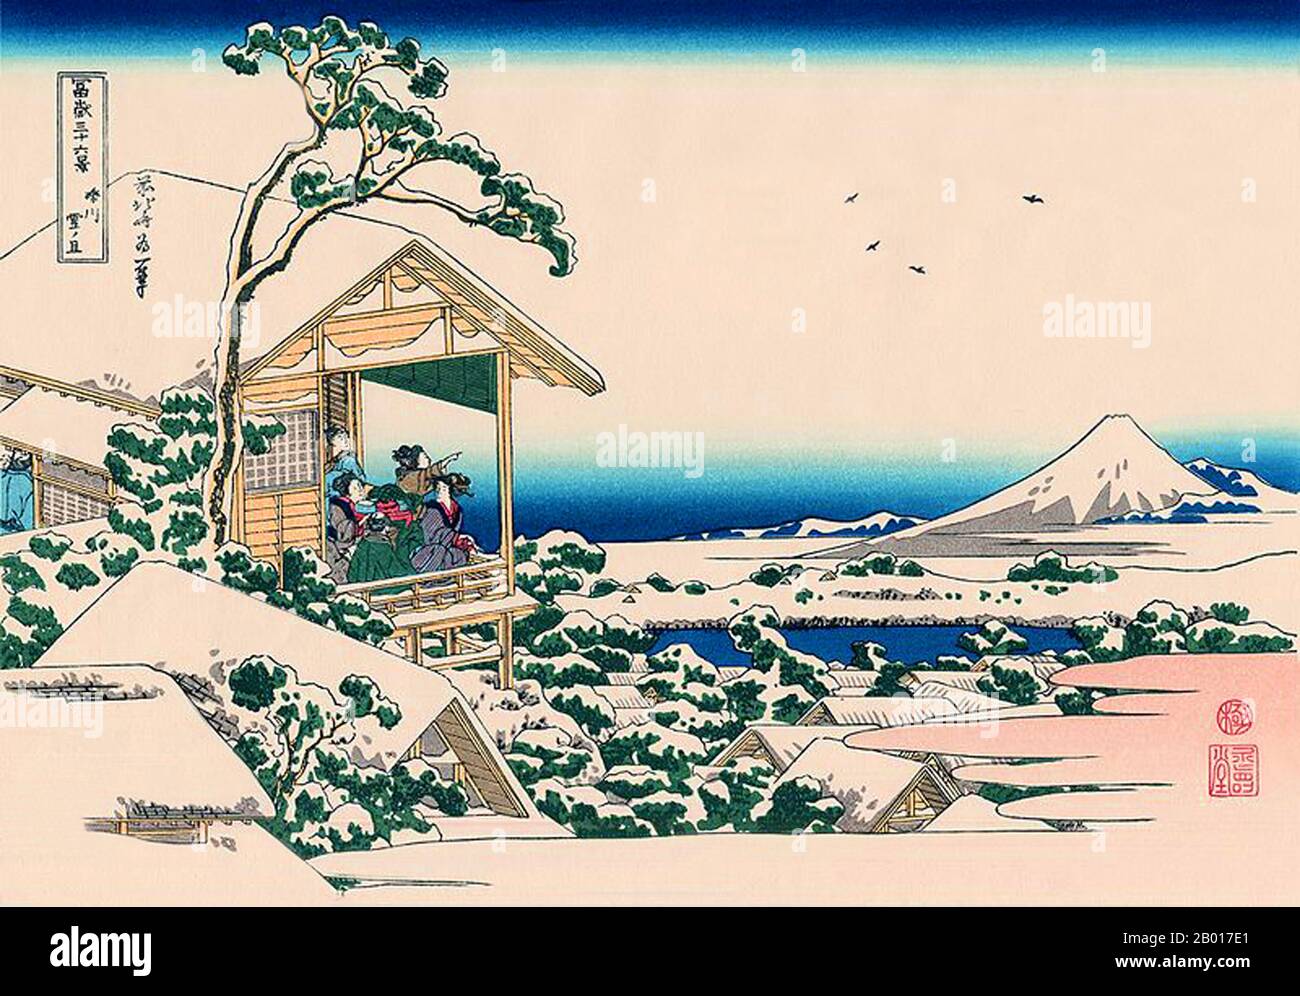 Japan: ‘Koishikawa am Morgen nach einem Schneefall’. Ukiyo-e Holzschnitt aus der Serie ‘Thirty-Six views of Mount Fuji’ von Katsushika Hokusai (31. Oktober 1760 - 10. Mai 1849), 1830. ‘Thirty-Six Views of Mount Fuji’ ist eine Serie von Holzschnitten der japanischen Künstlerin Katsushika Hokusai, die „Sukiyo-e“ ‘. Die Serie zeigt den Fuji in unterschiedlichen Jahreszeiten und Wetterbedingungen an verschiedenen Orten und Entfernungen. Es besteht tatsächlich aus 46 Drucken, die zwischen 1826 und 1833 entstanden sind. Die ersten 36 wurden in die ursprüngliche Publikation aufgenommen und aufgrund ihrer Popularität kamen 10 weitere hinzu. Stockfoto